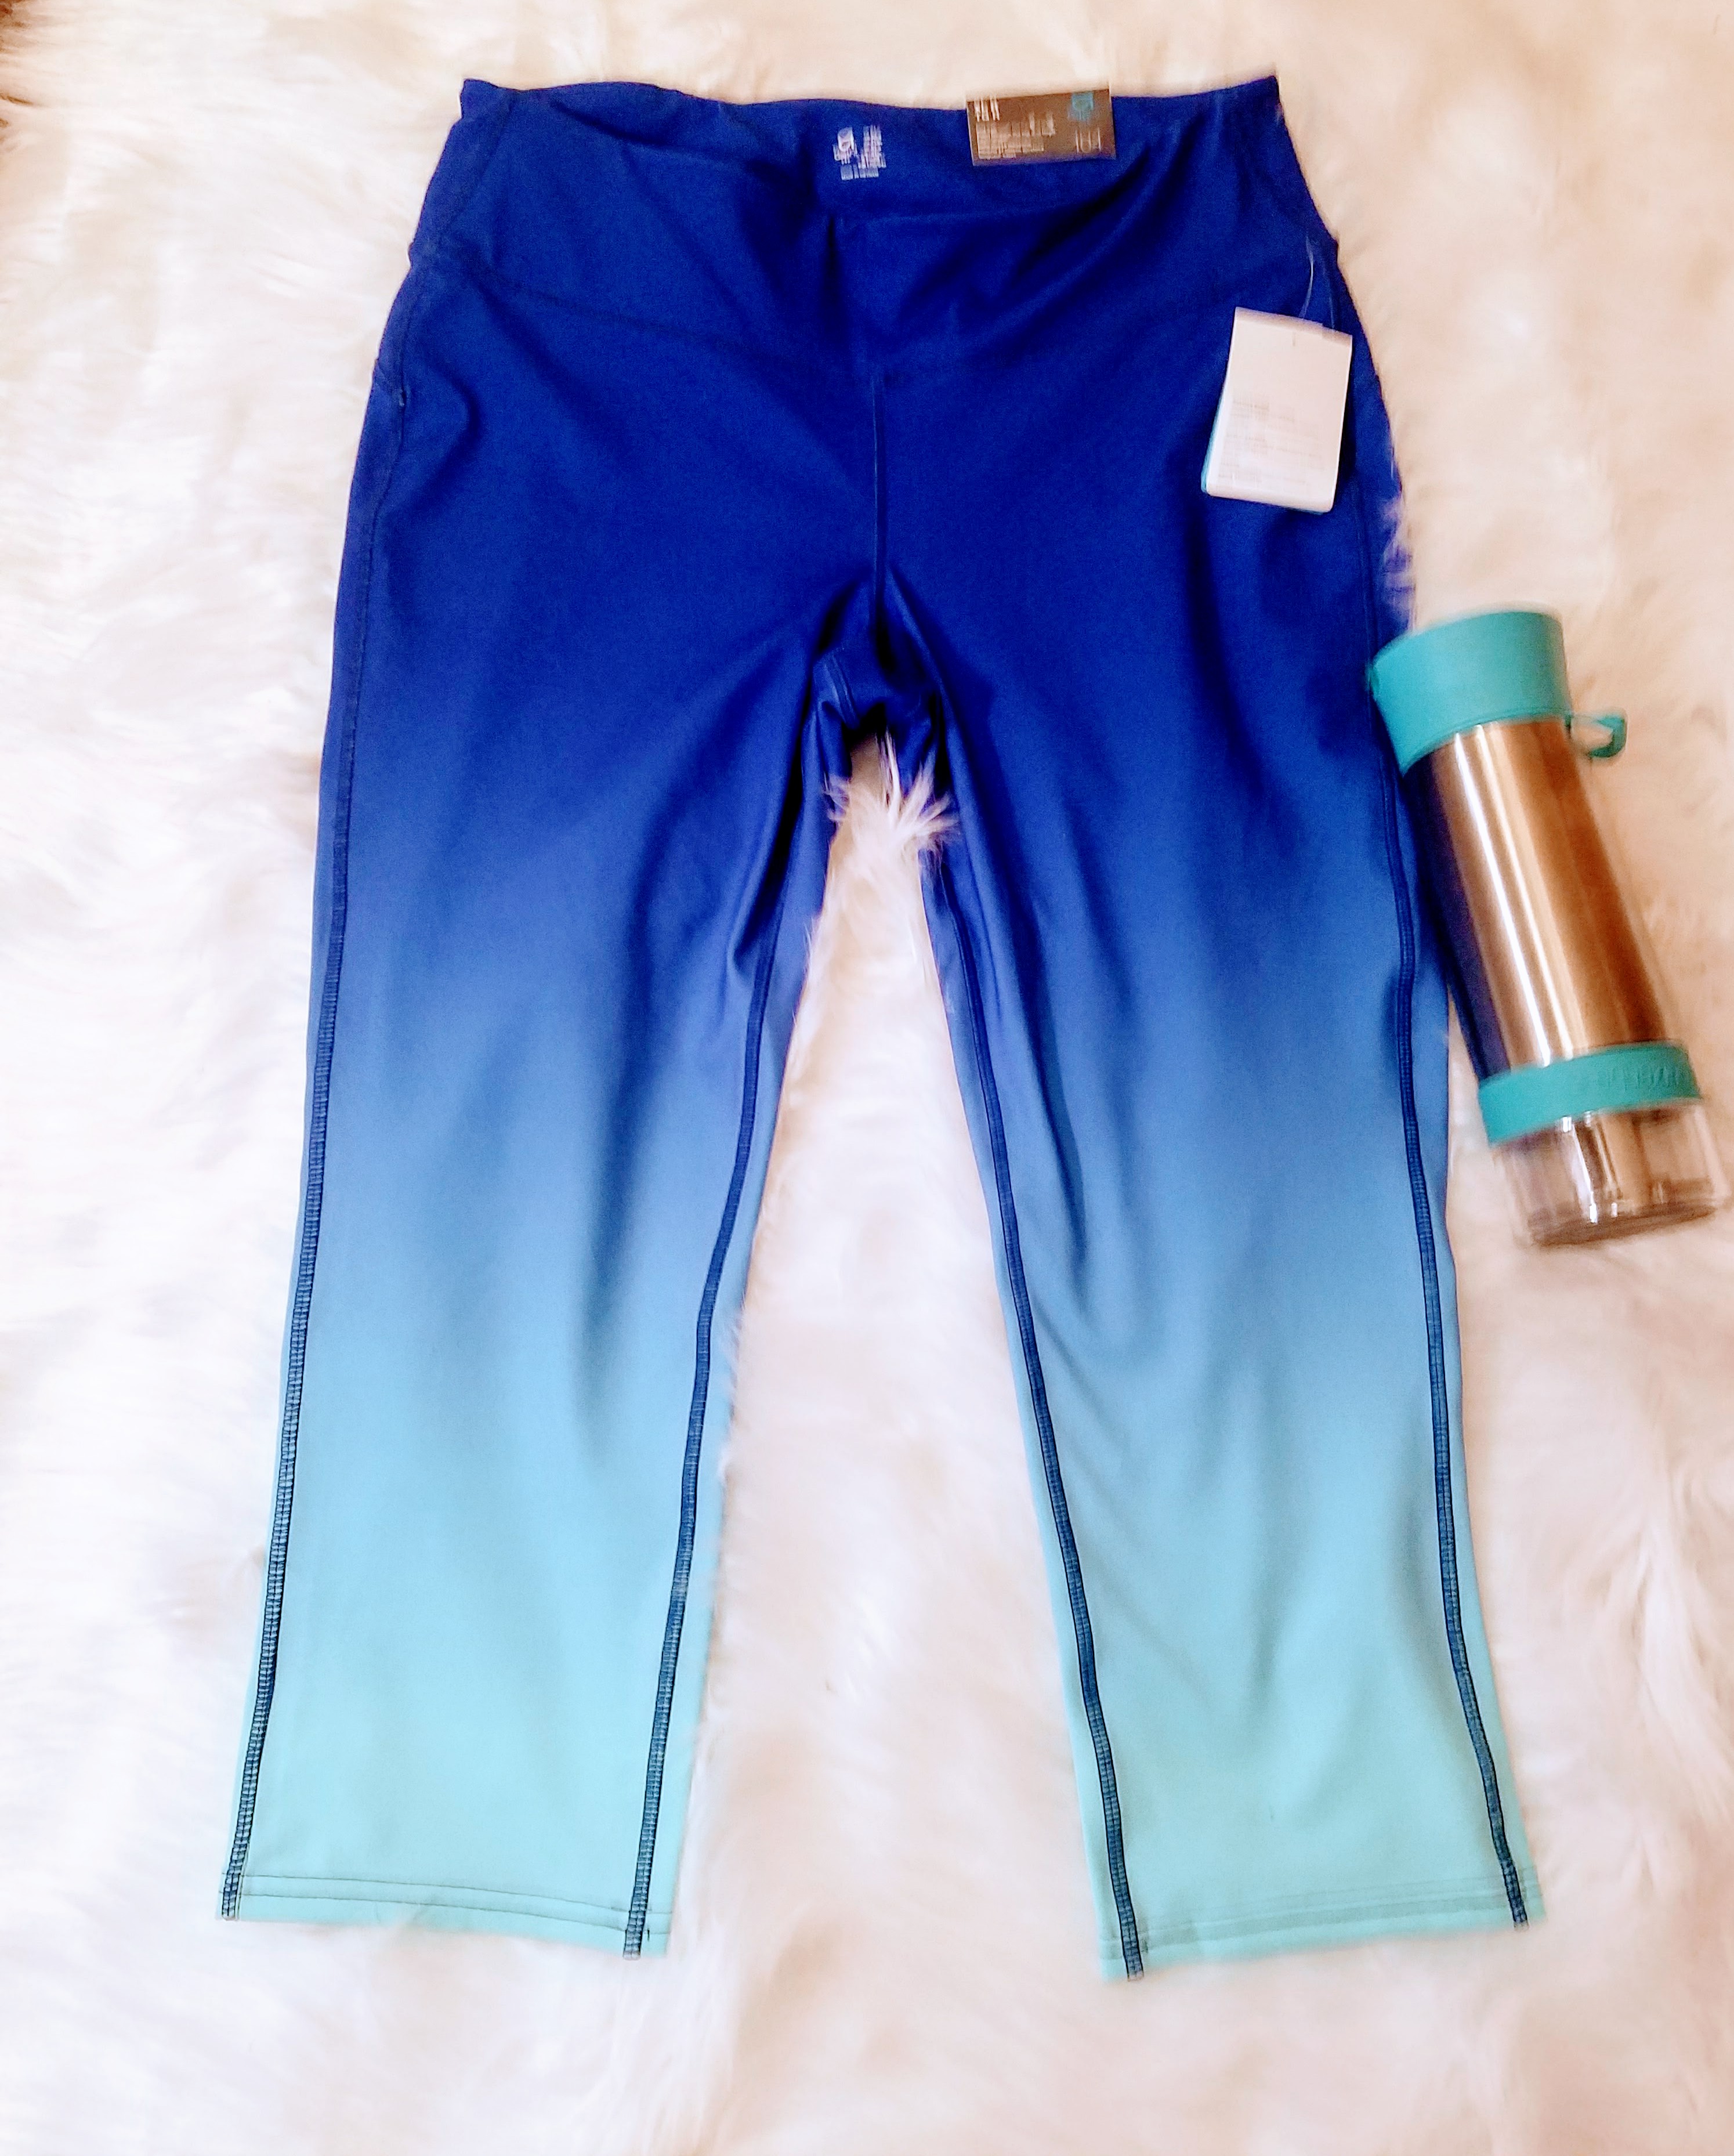 Gap Factory NWT Blue Ombre Fit Capri Pants – XL – Aunt Gladys' Attic